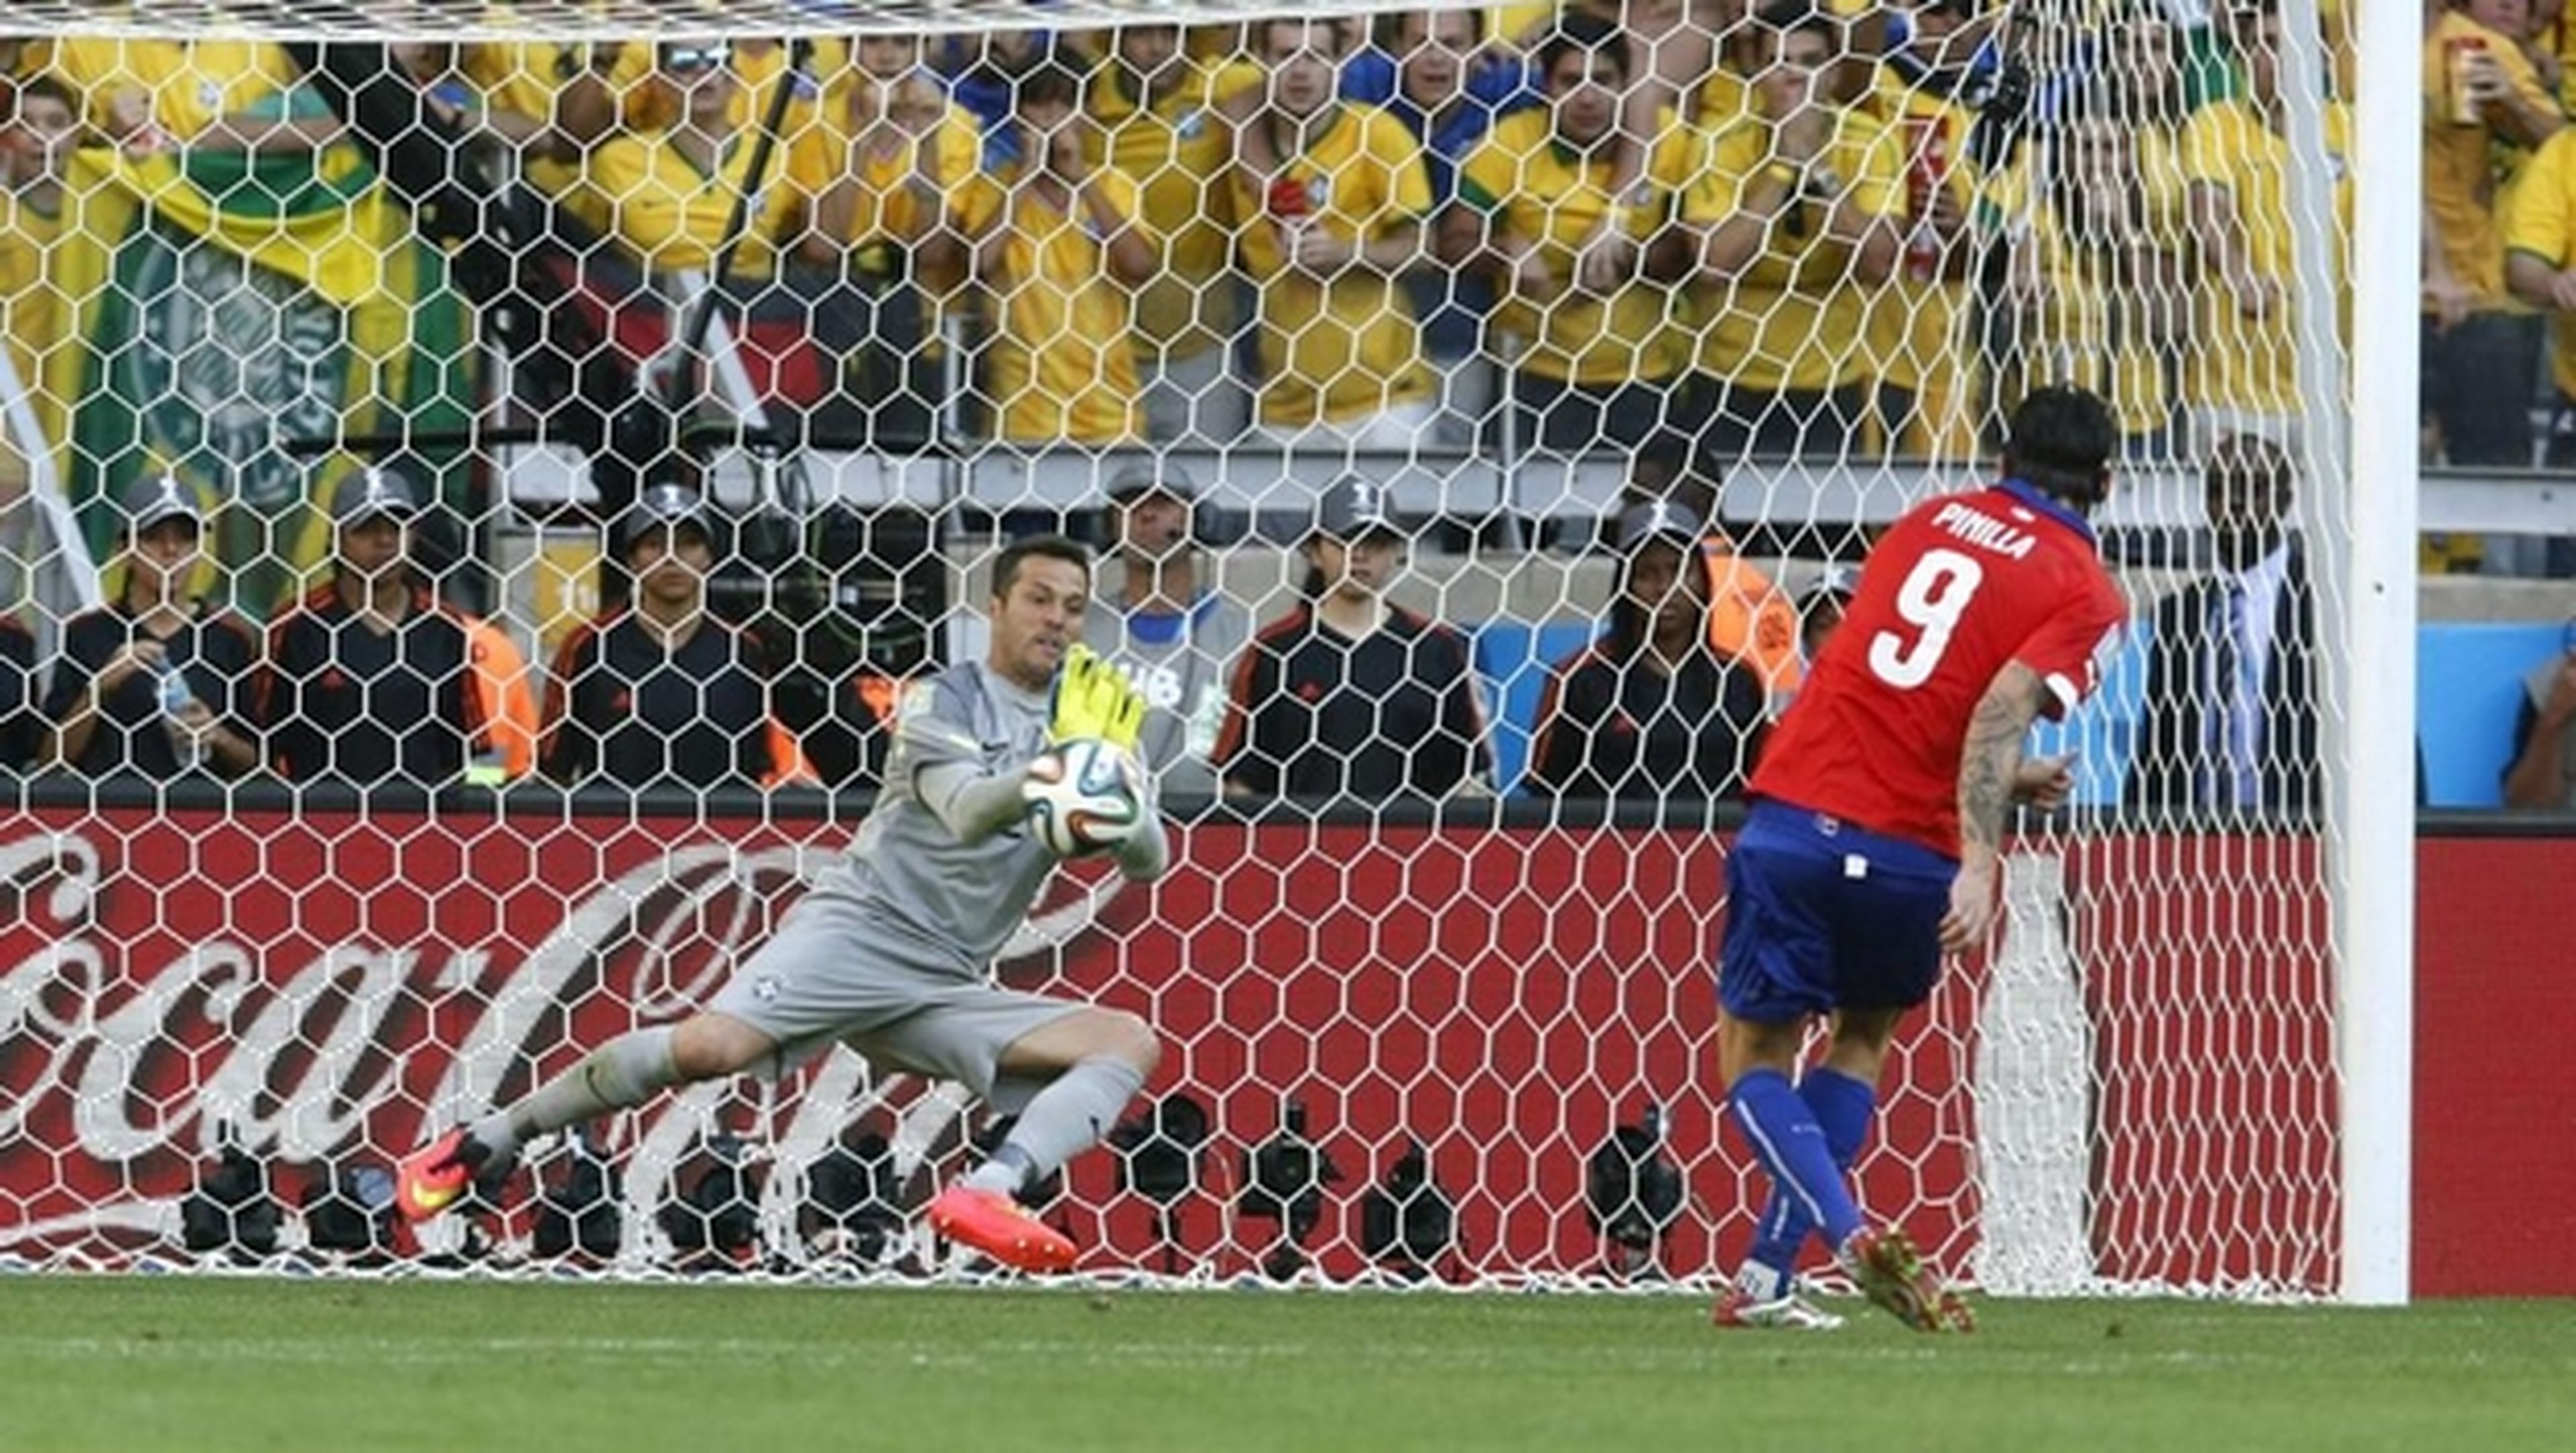 Durante el lanzamiento de los penaltis en el partido Brasil-Chile del Mundial de Fútbol, Twitter se paralizó.